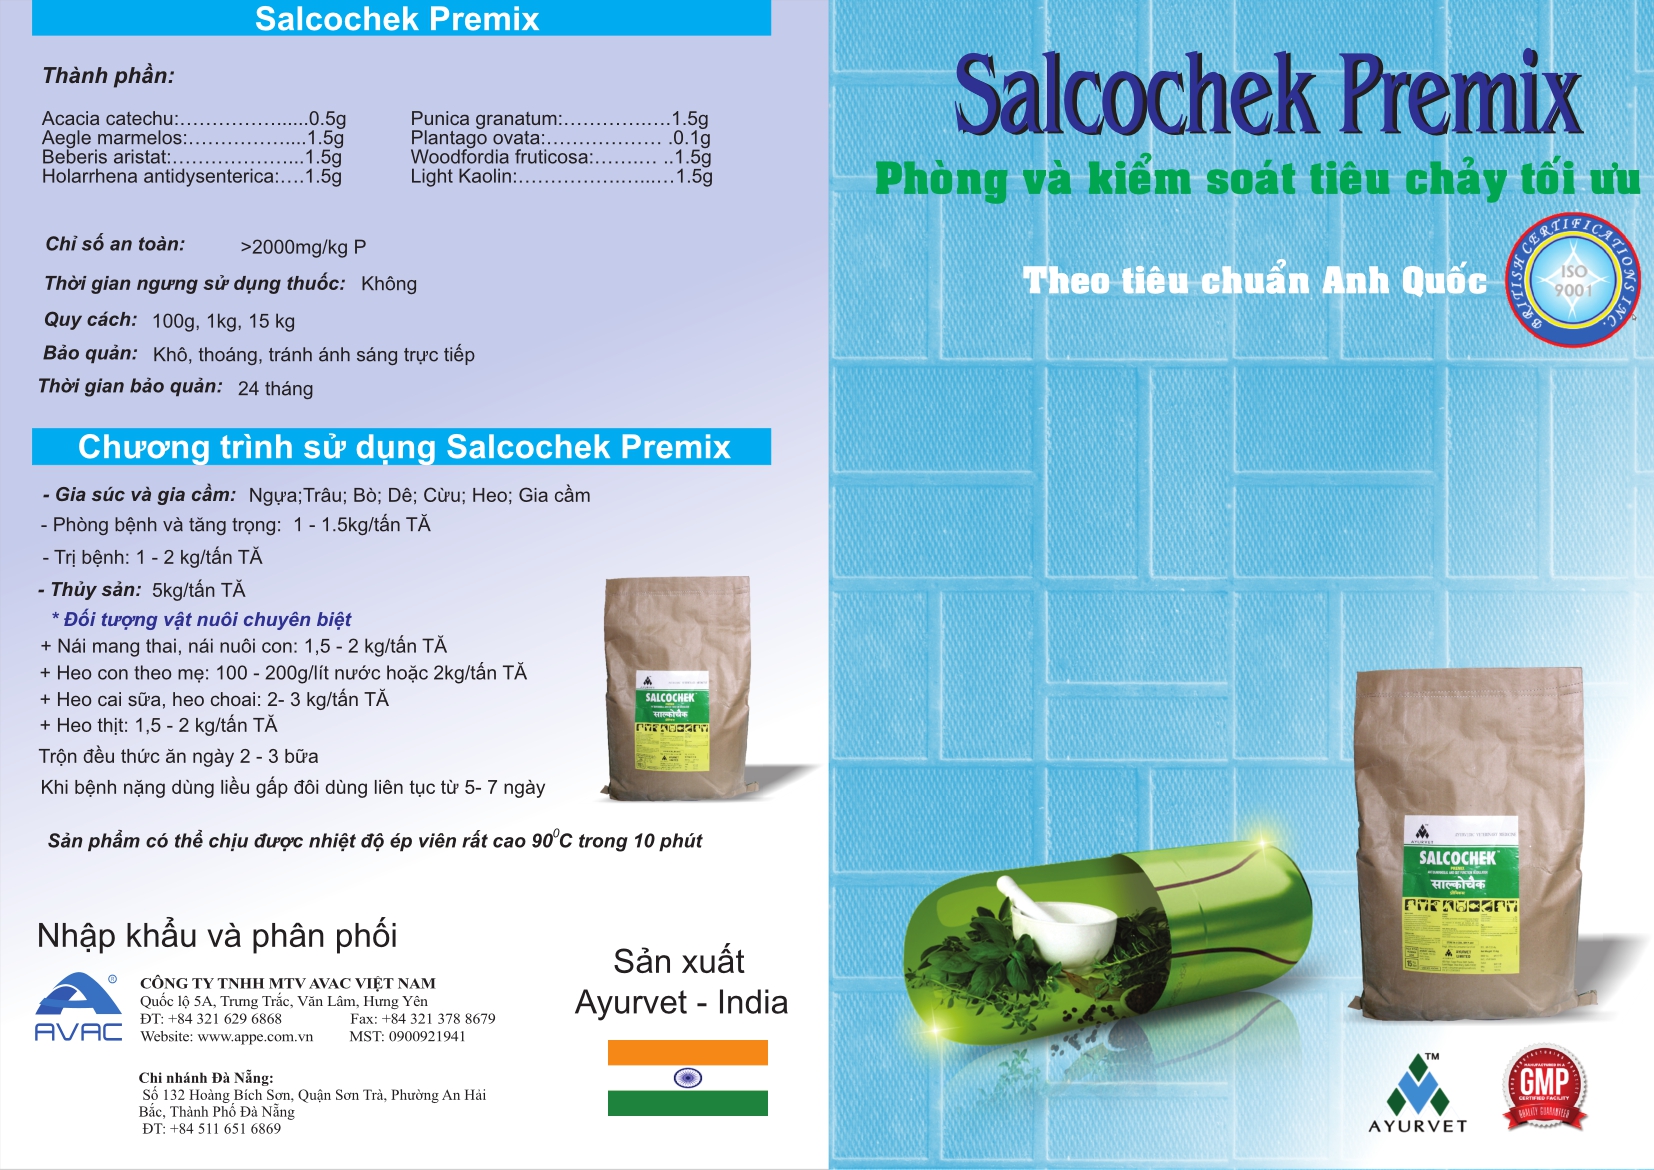 Salcochek Premix 1